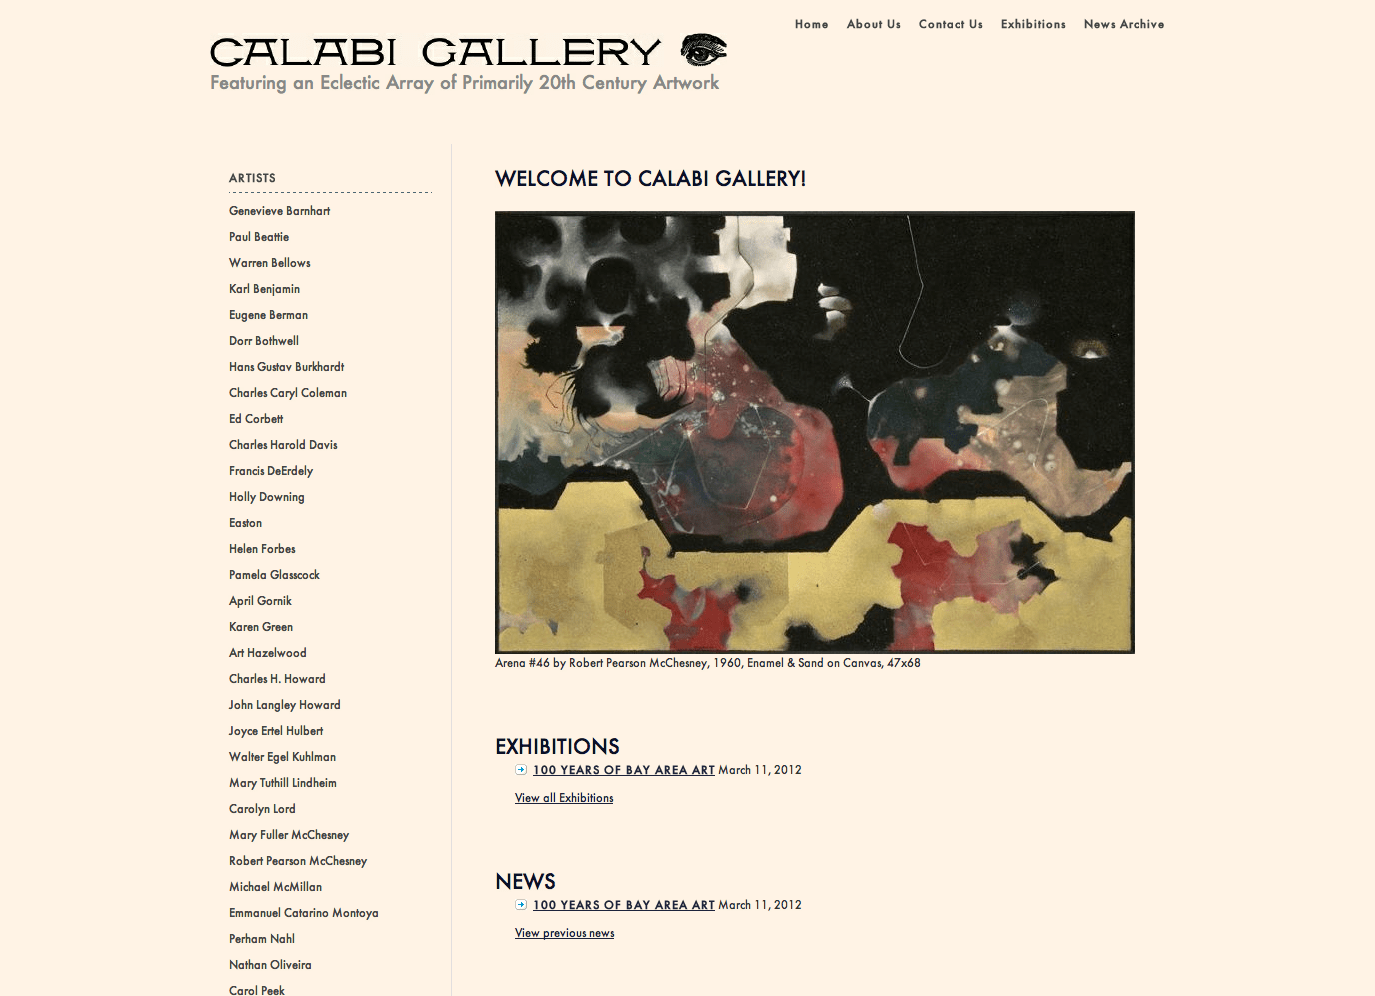 Calabi Gallery